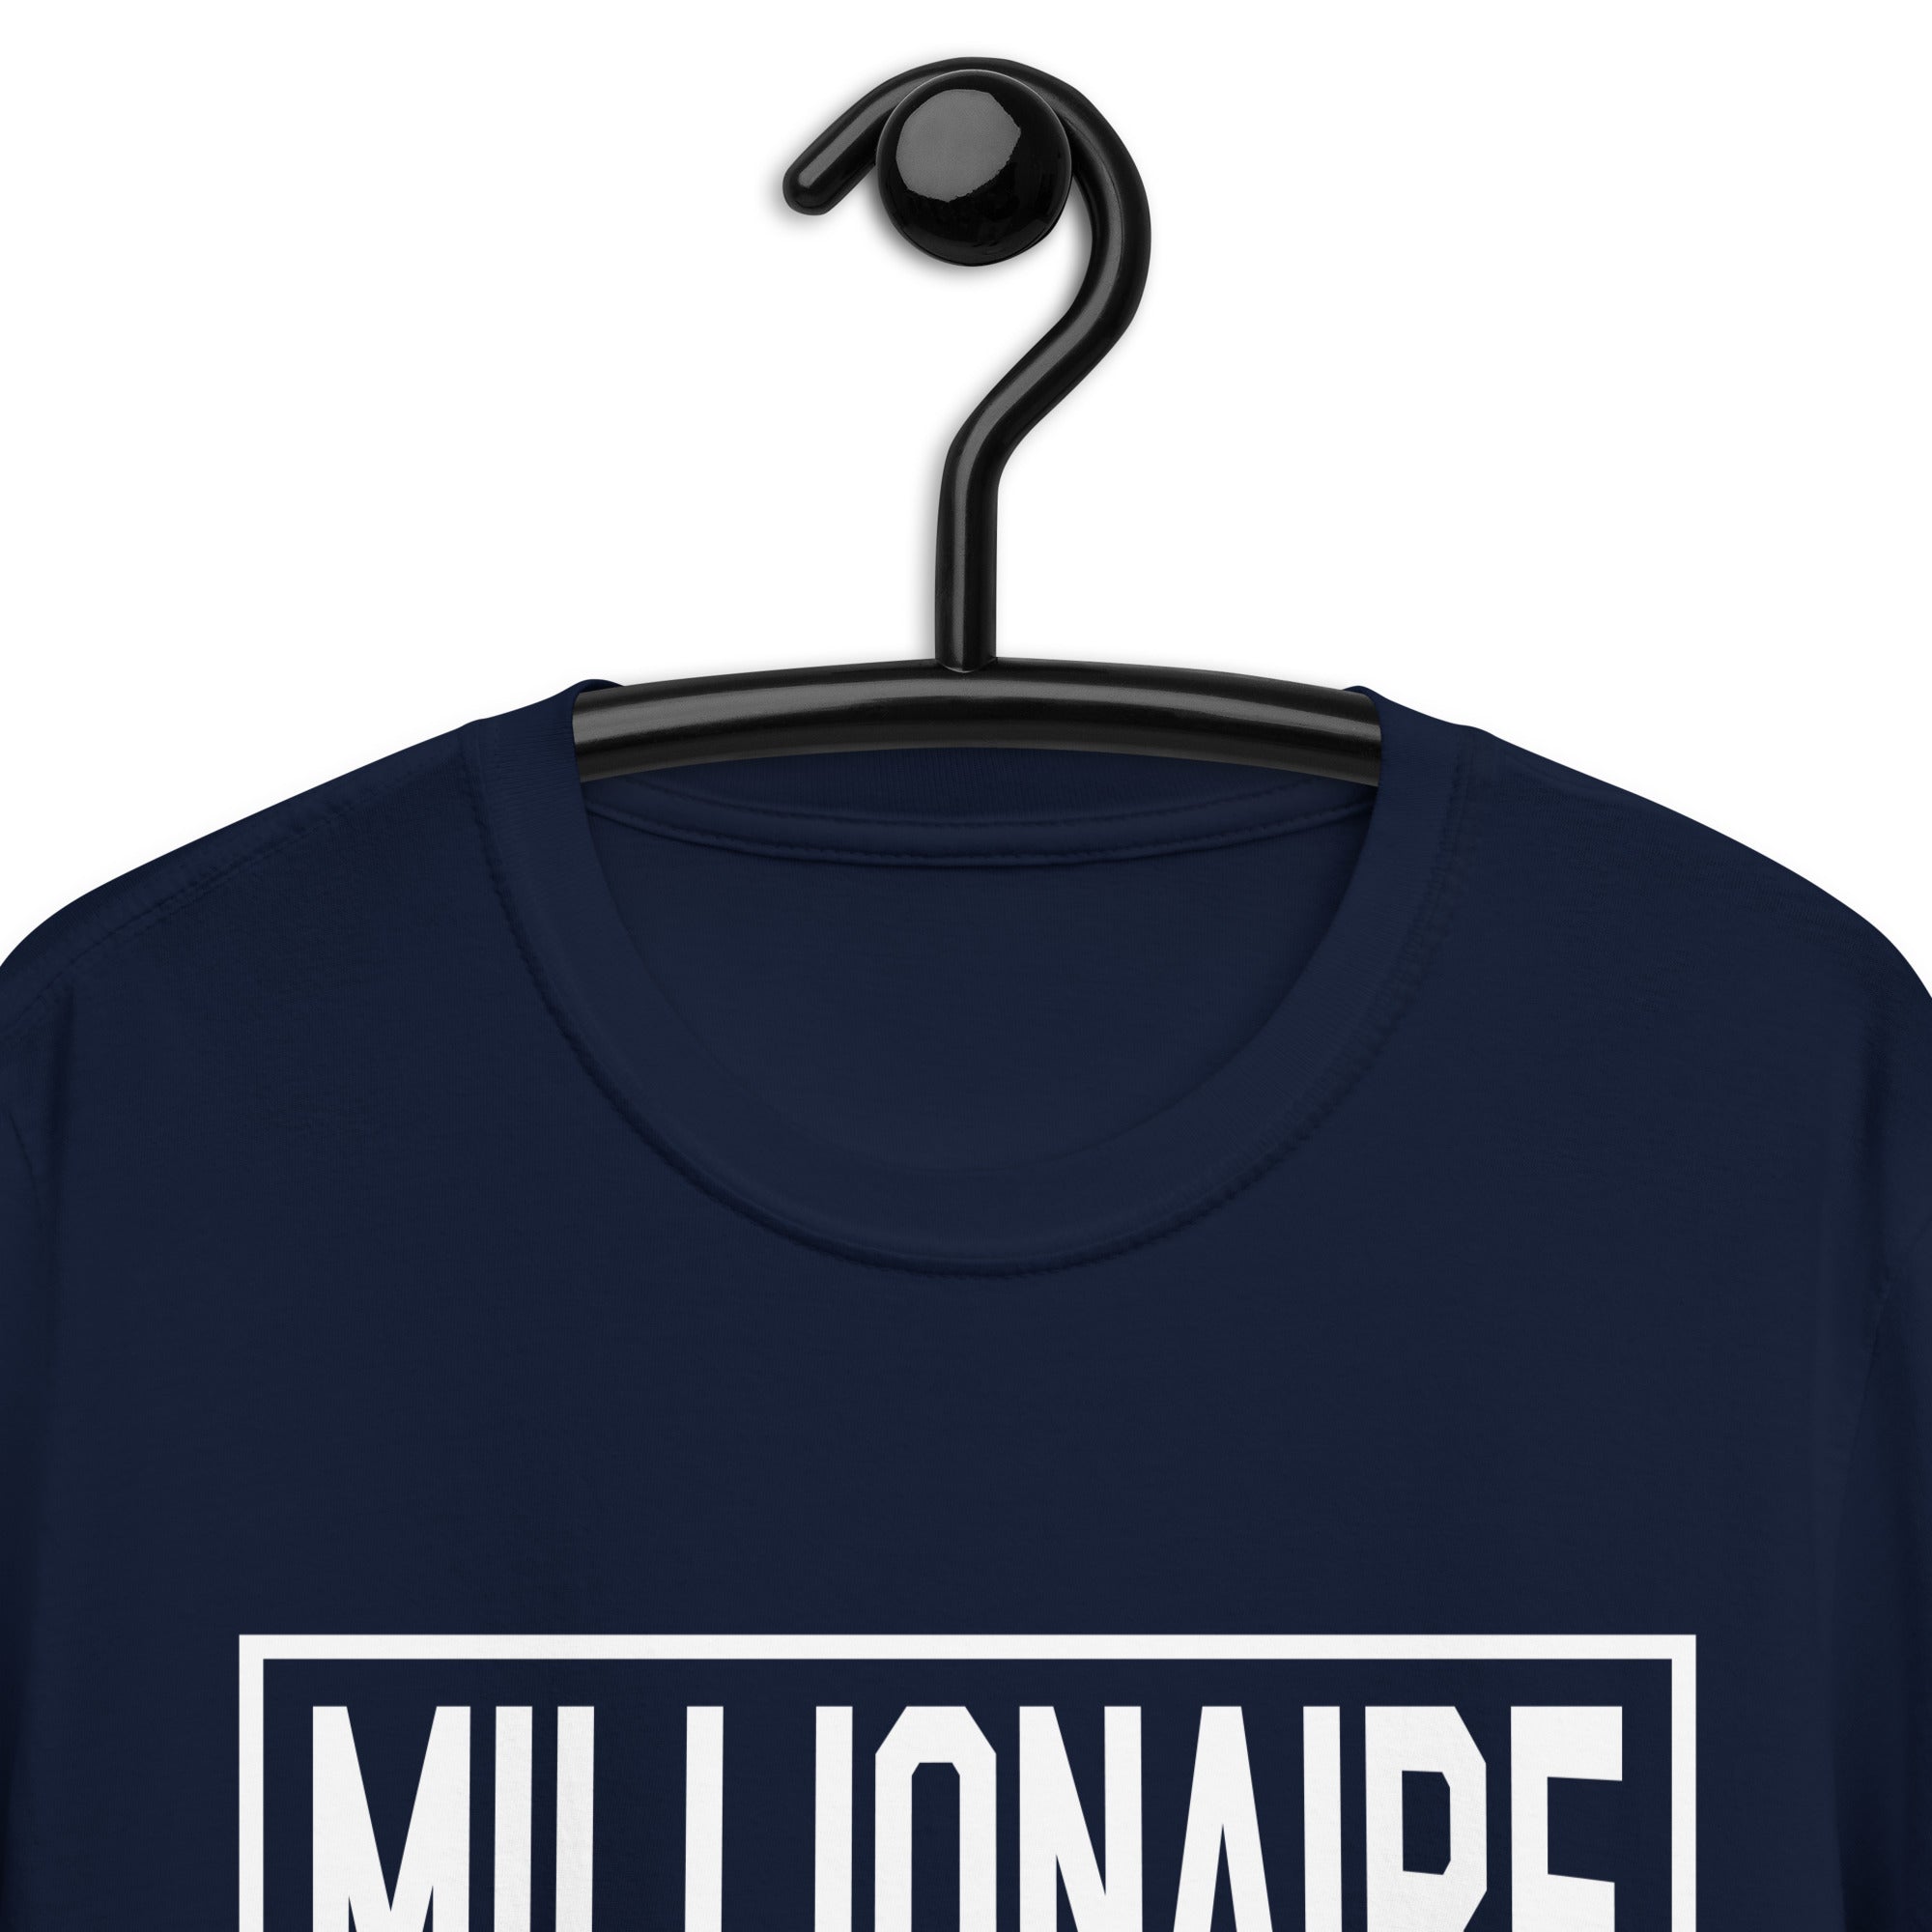 Short-Sleeve Unisex T-Shirt | Millianaire